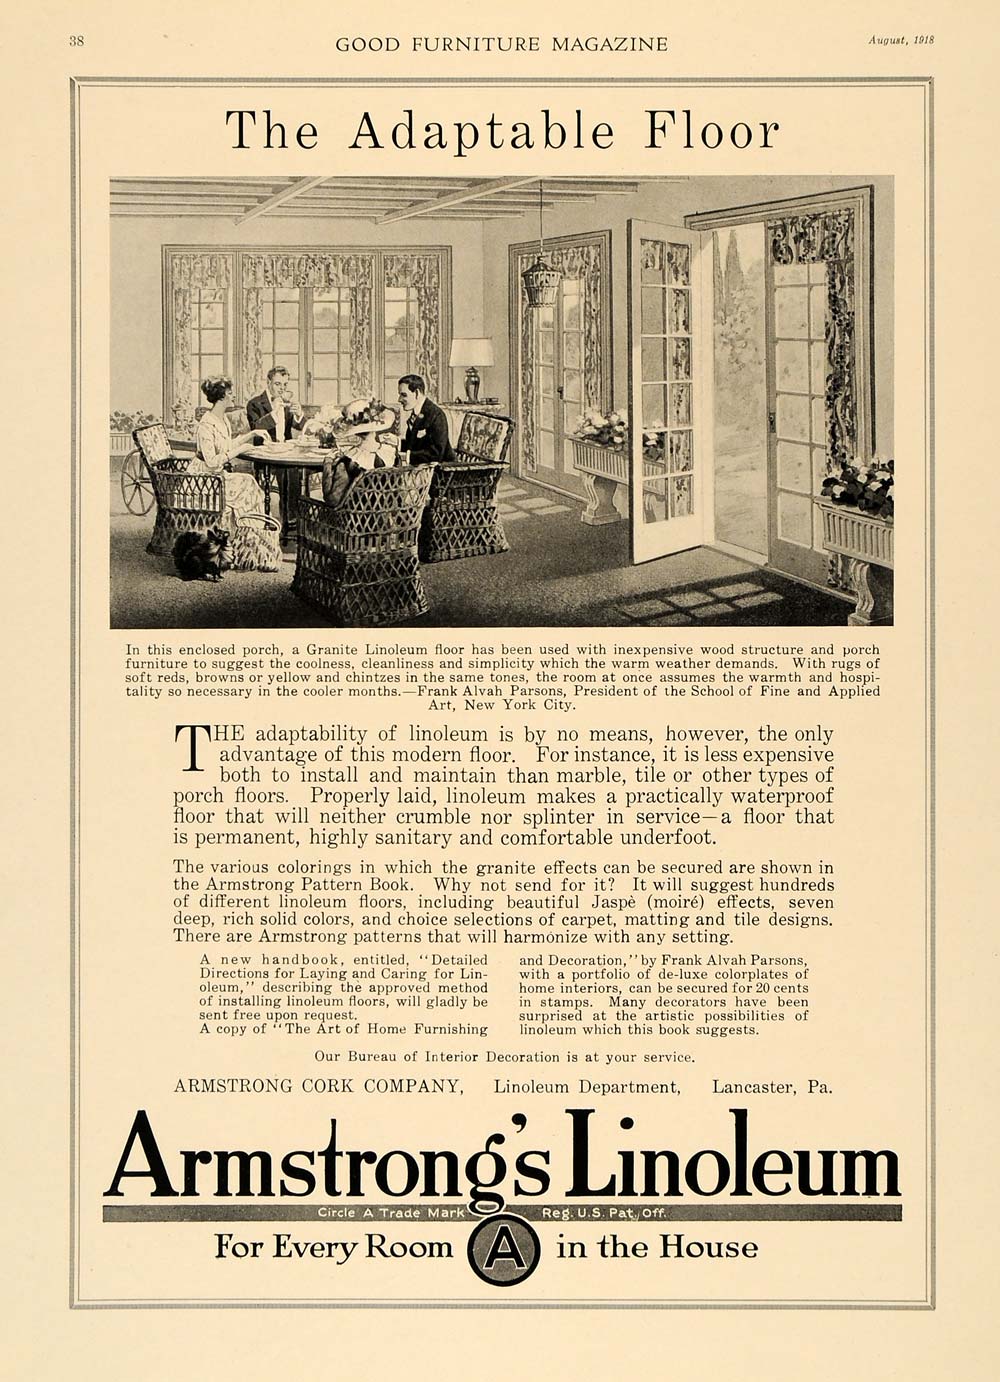 1918 Ad Armstrong Cork Linoleum Granite Adaptable Floor - ORIGINAL GF1